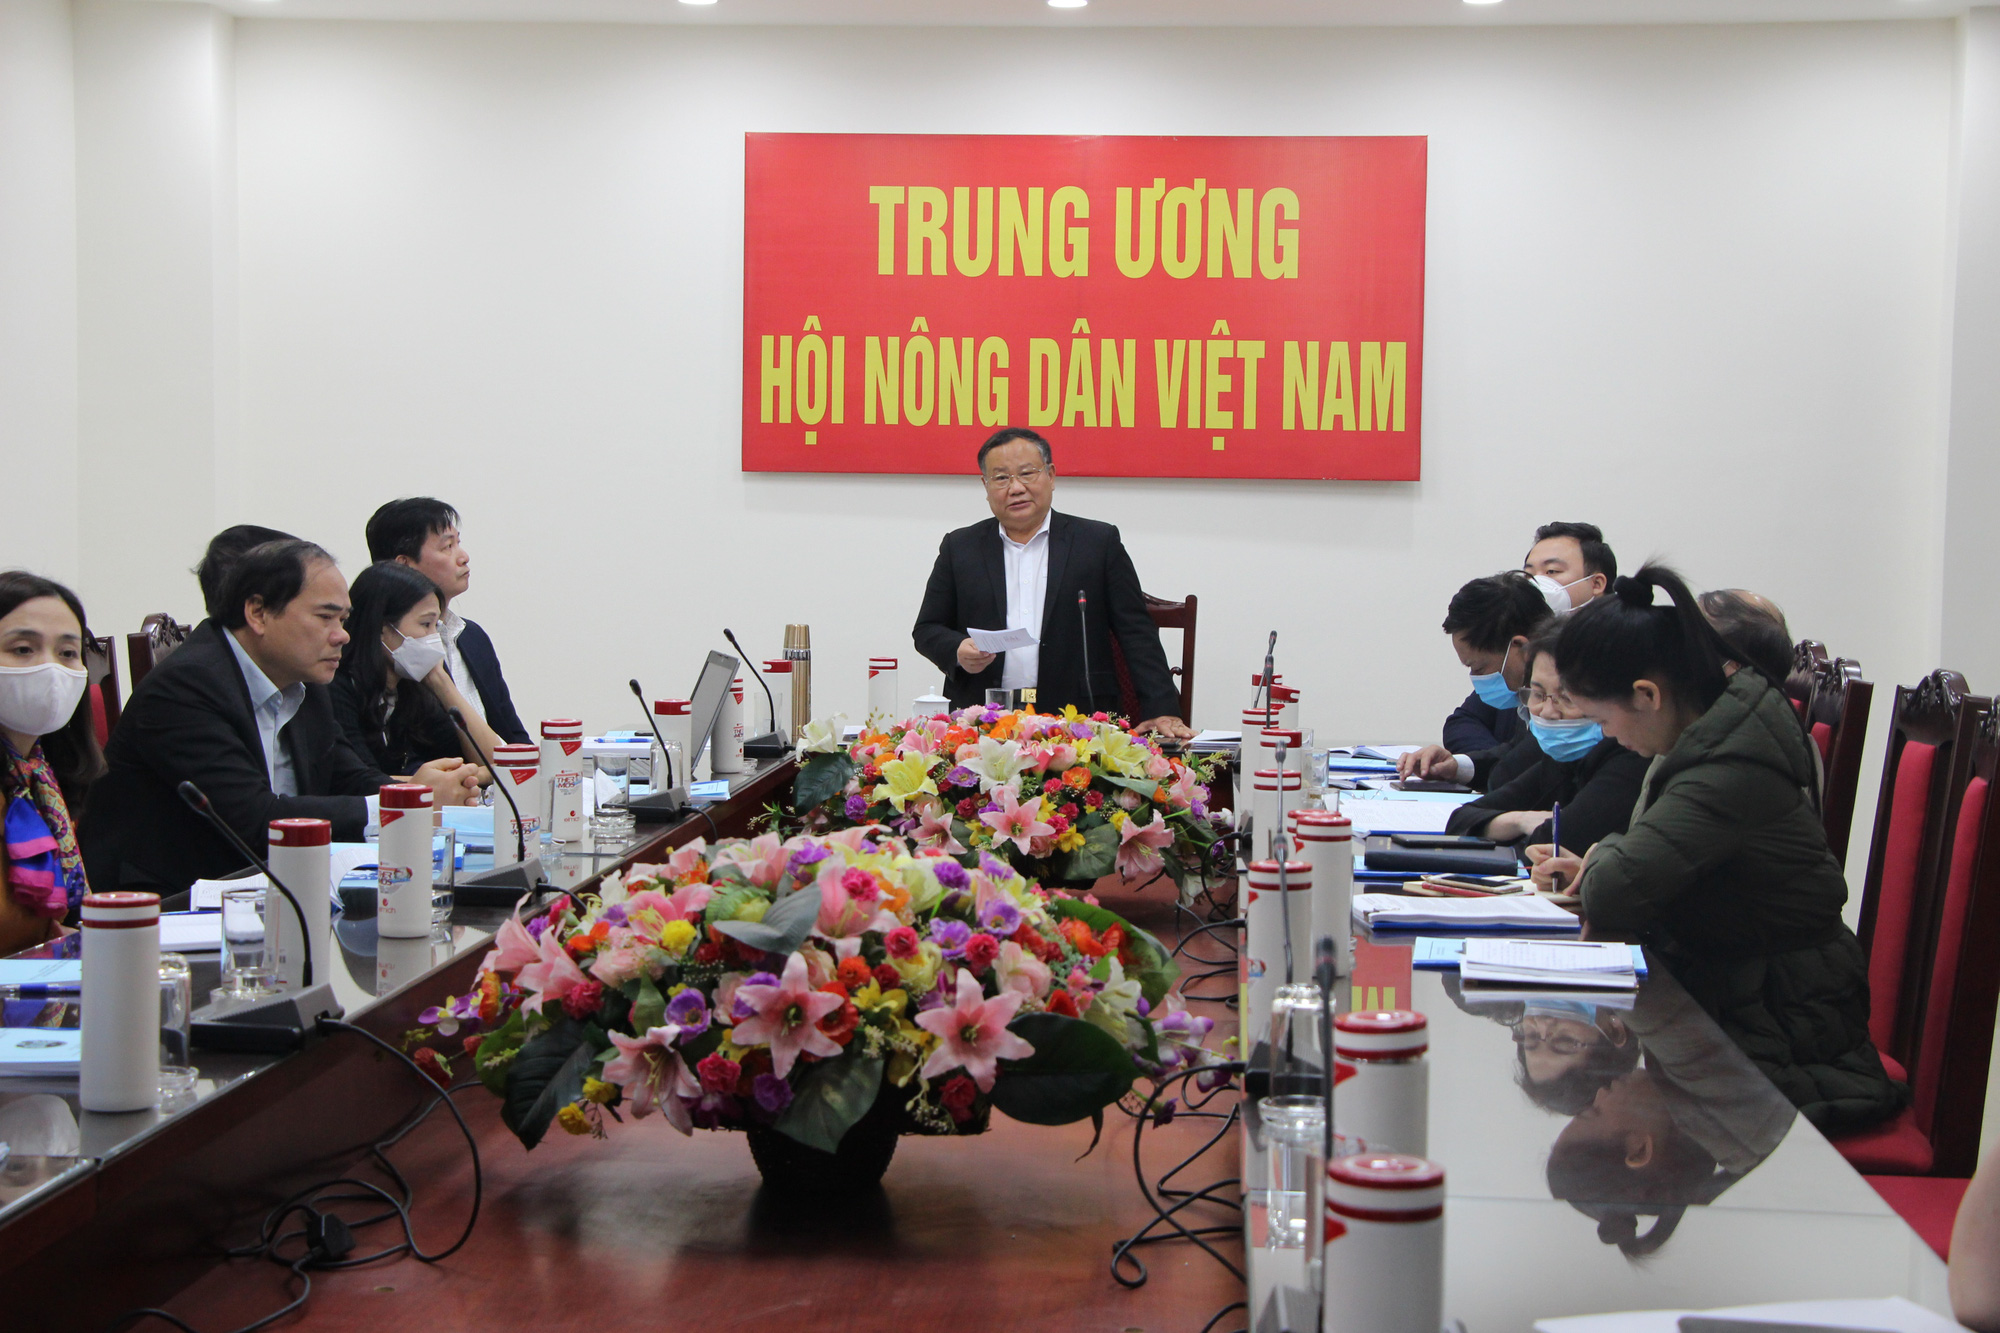 Phó Chủ tịch Hội NDVN Đinh Khắc Đính: Hỗ trợ nông dân miền Trung – Tây Nguyên phát triển kinh tế nông nghiệp bền vững - Ảnh 2.